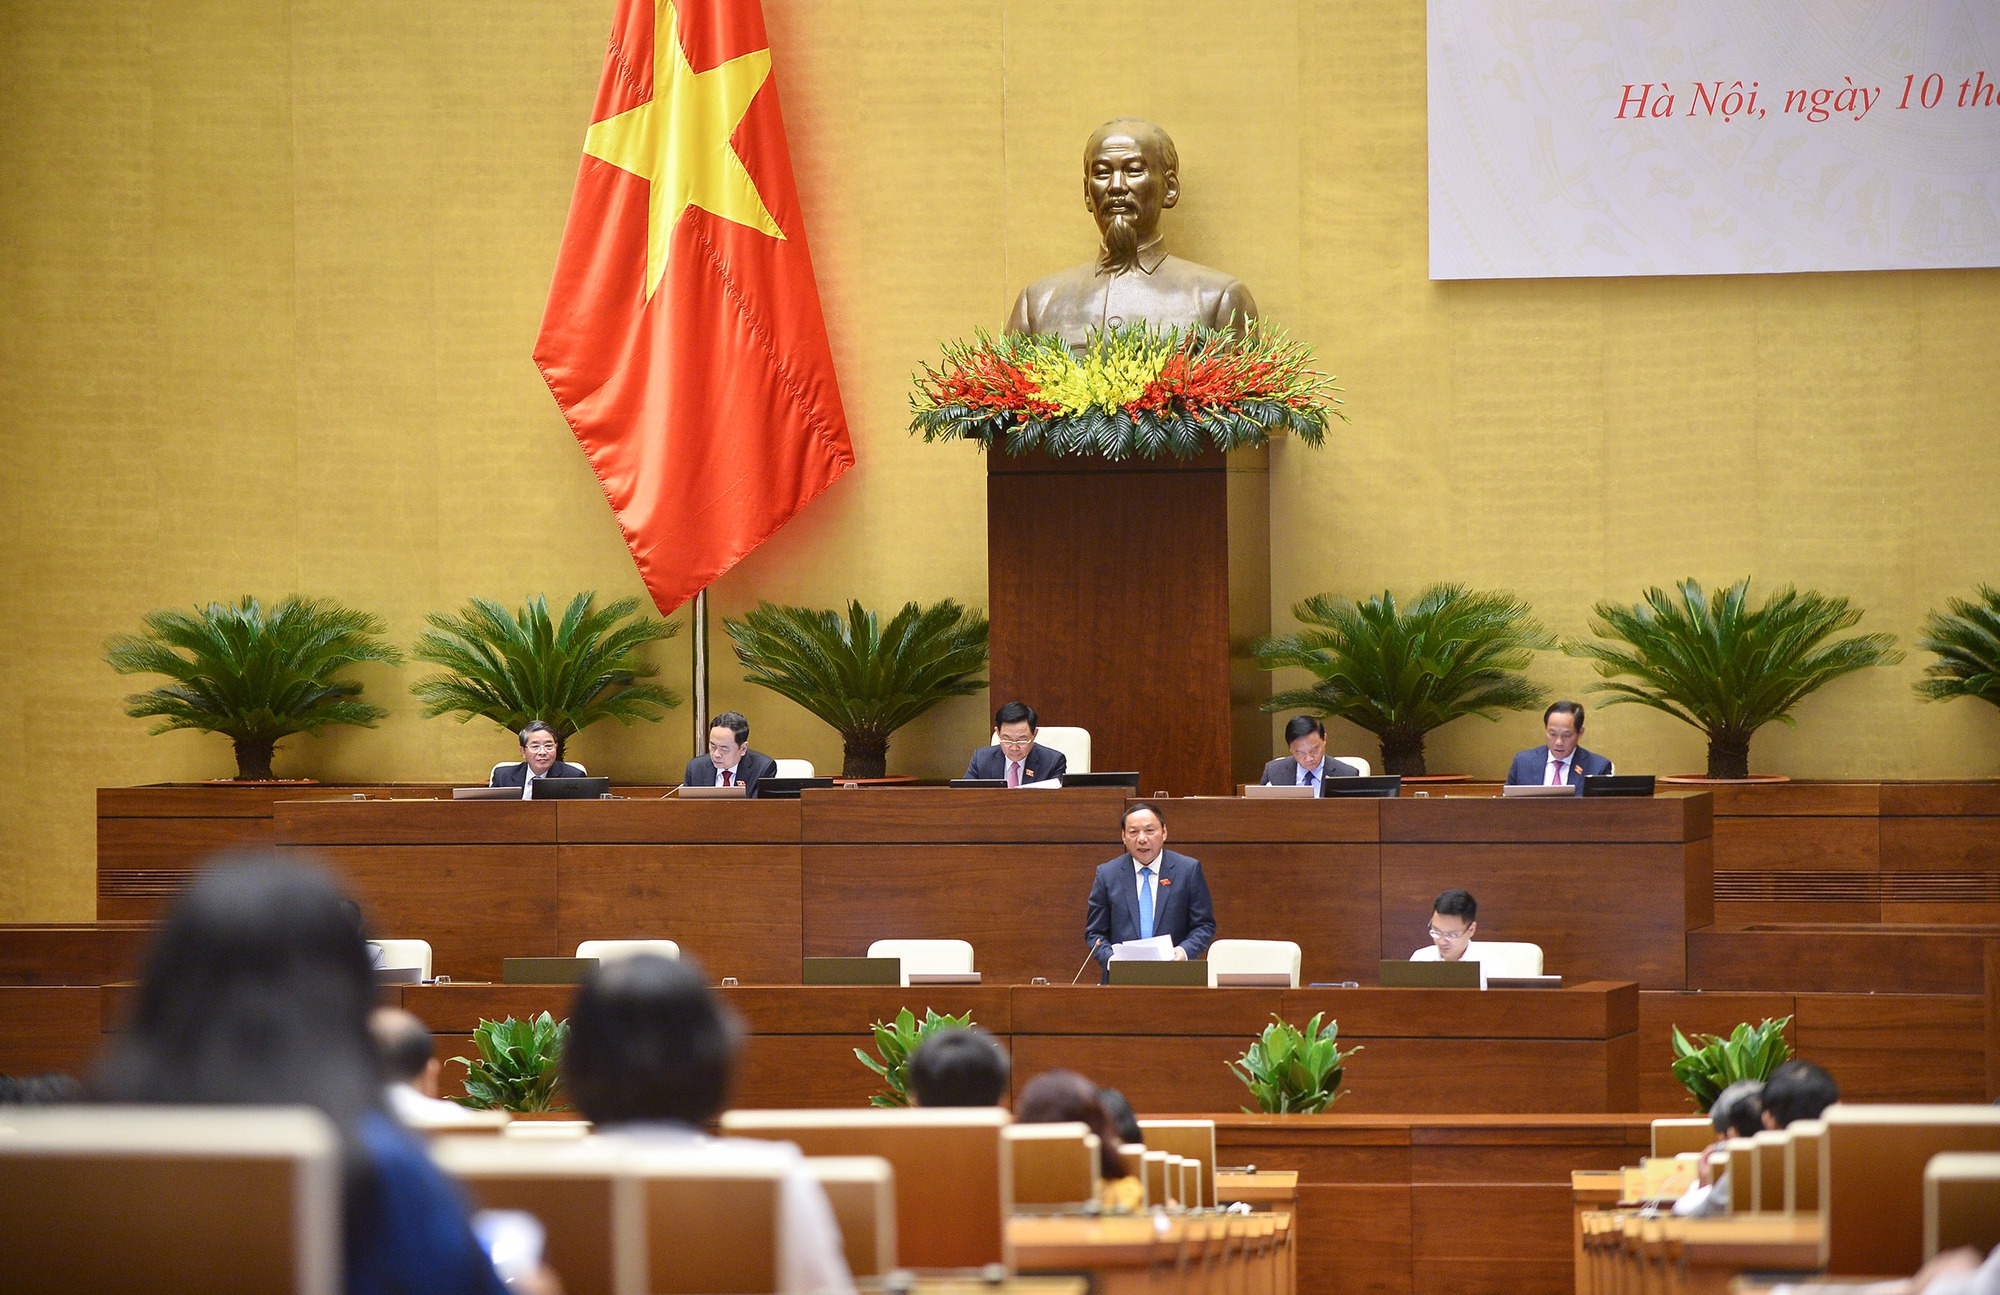 Đại biểu Quốc hội: Bộ trưởng Nguyễn Văn Hùng cầu thị, trách nhiệm và khiêm tốn - Ảnh 1.